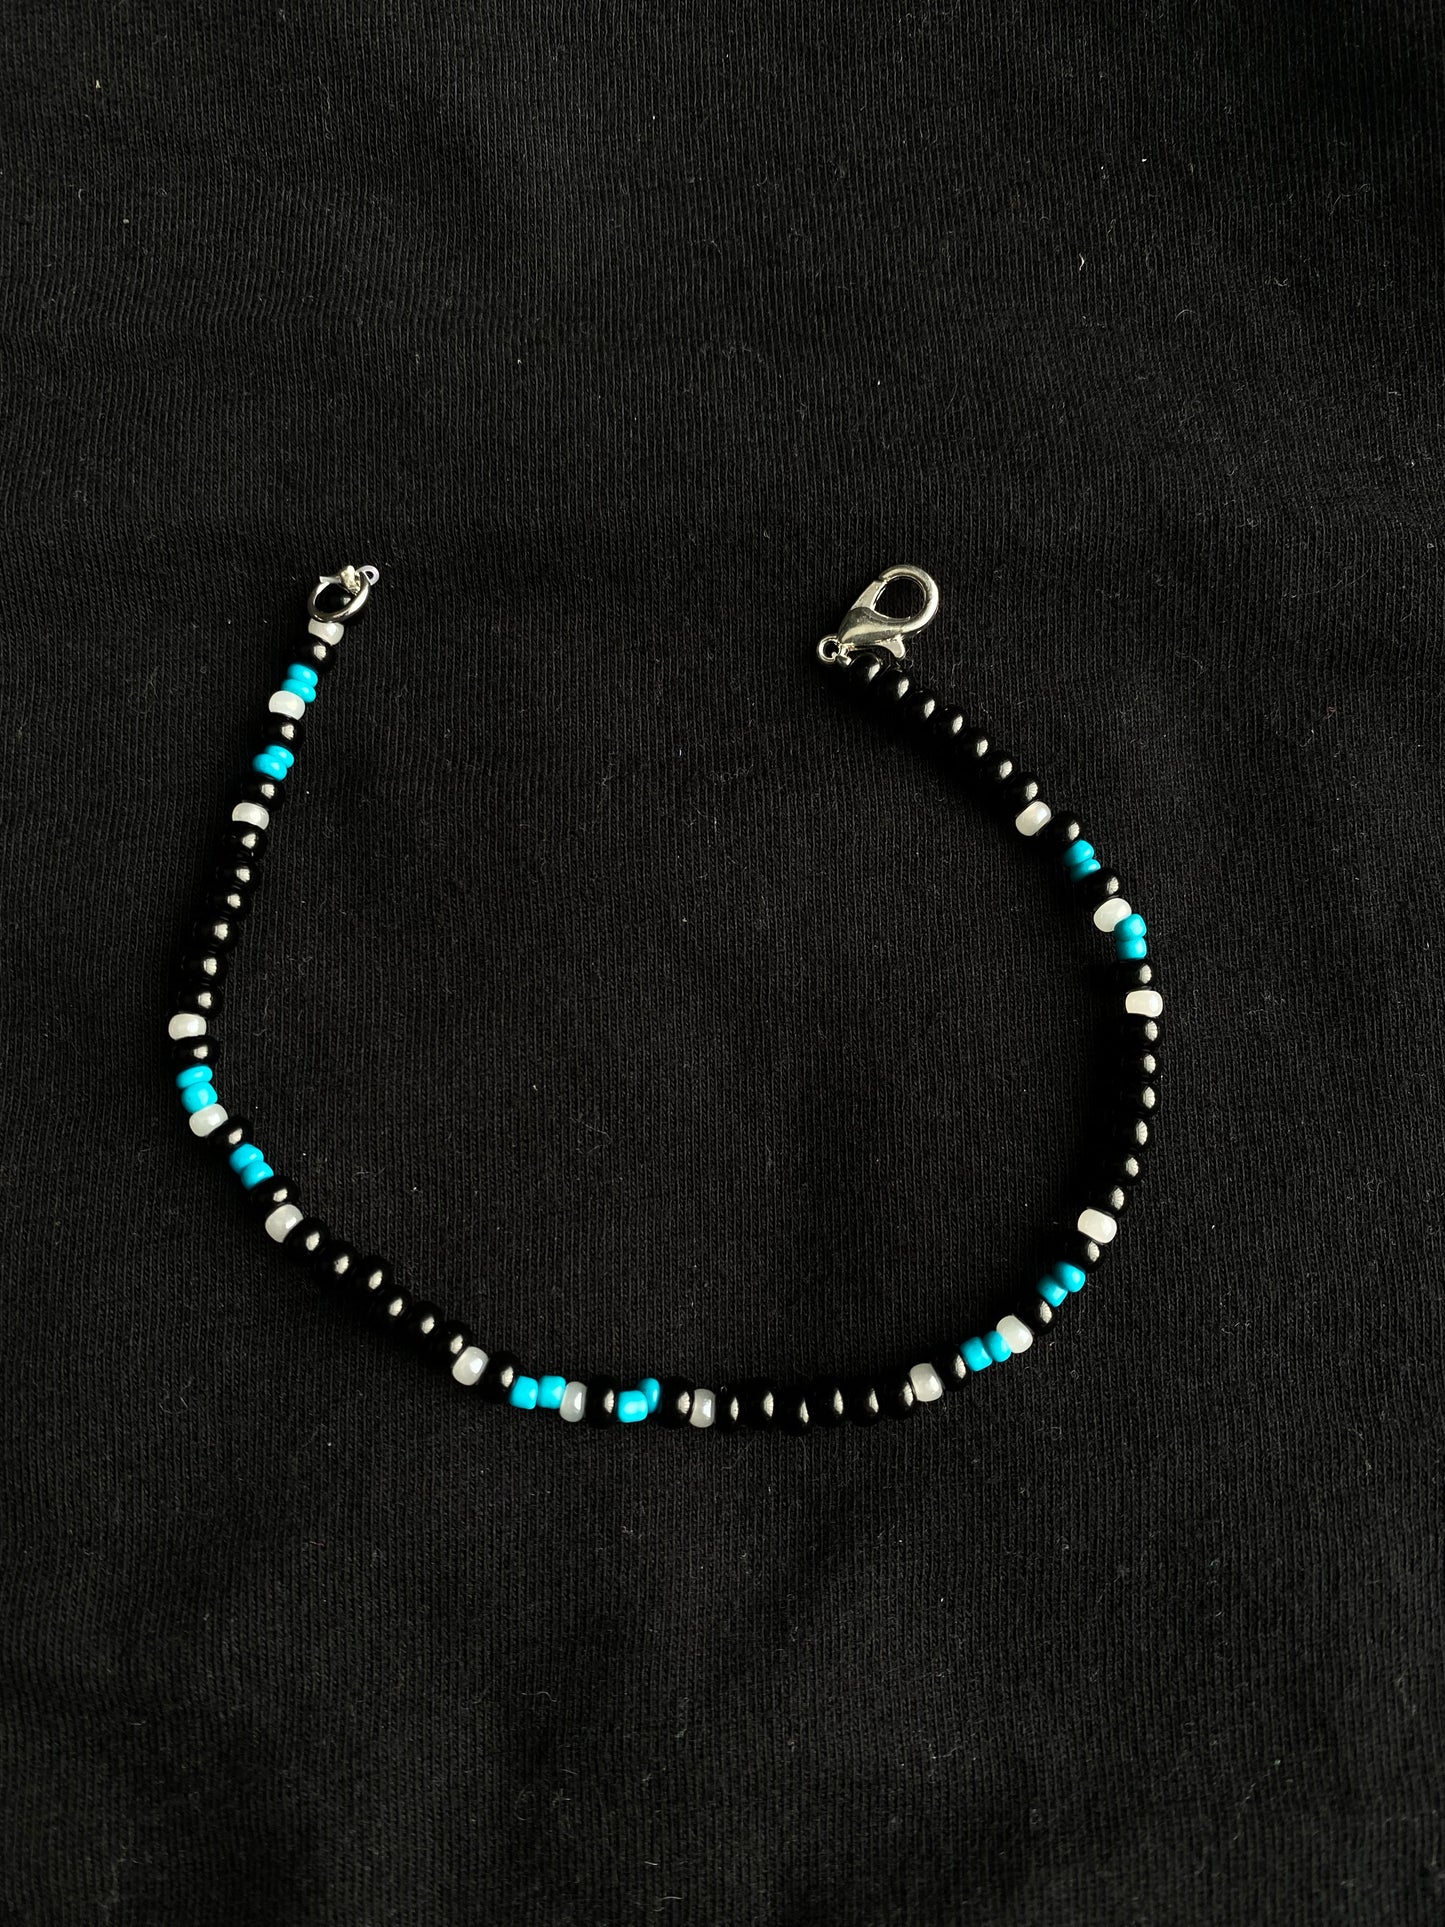 Black and blue bracelet